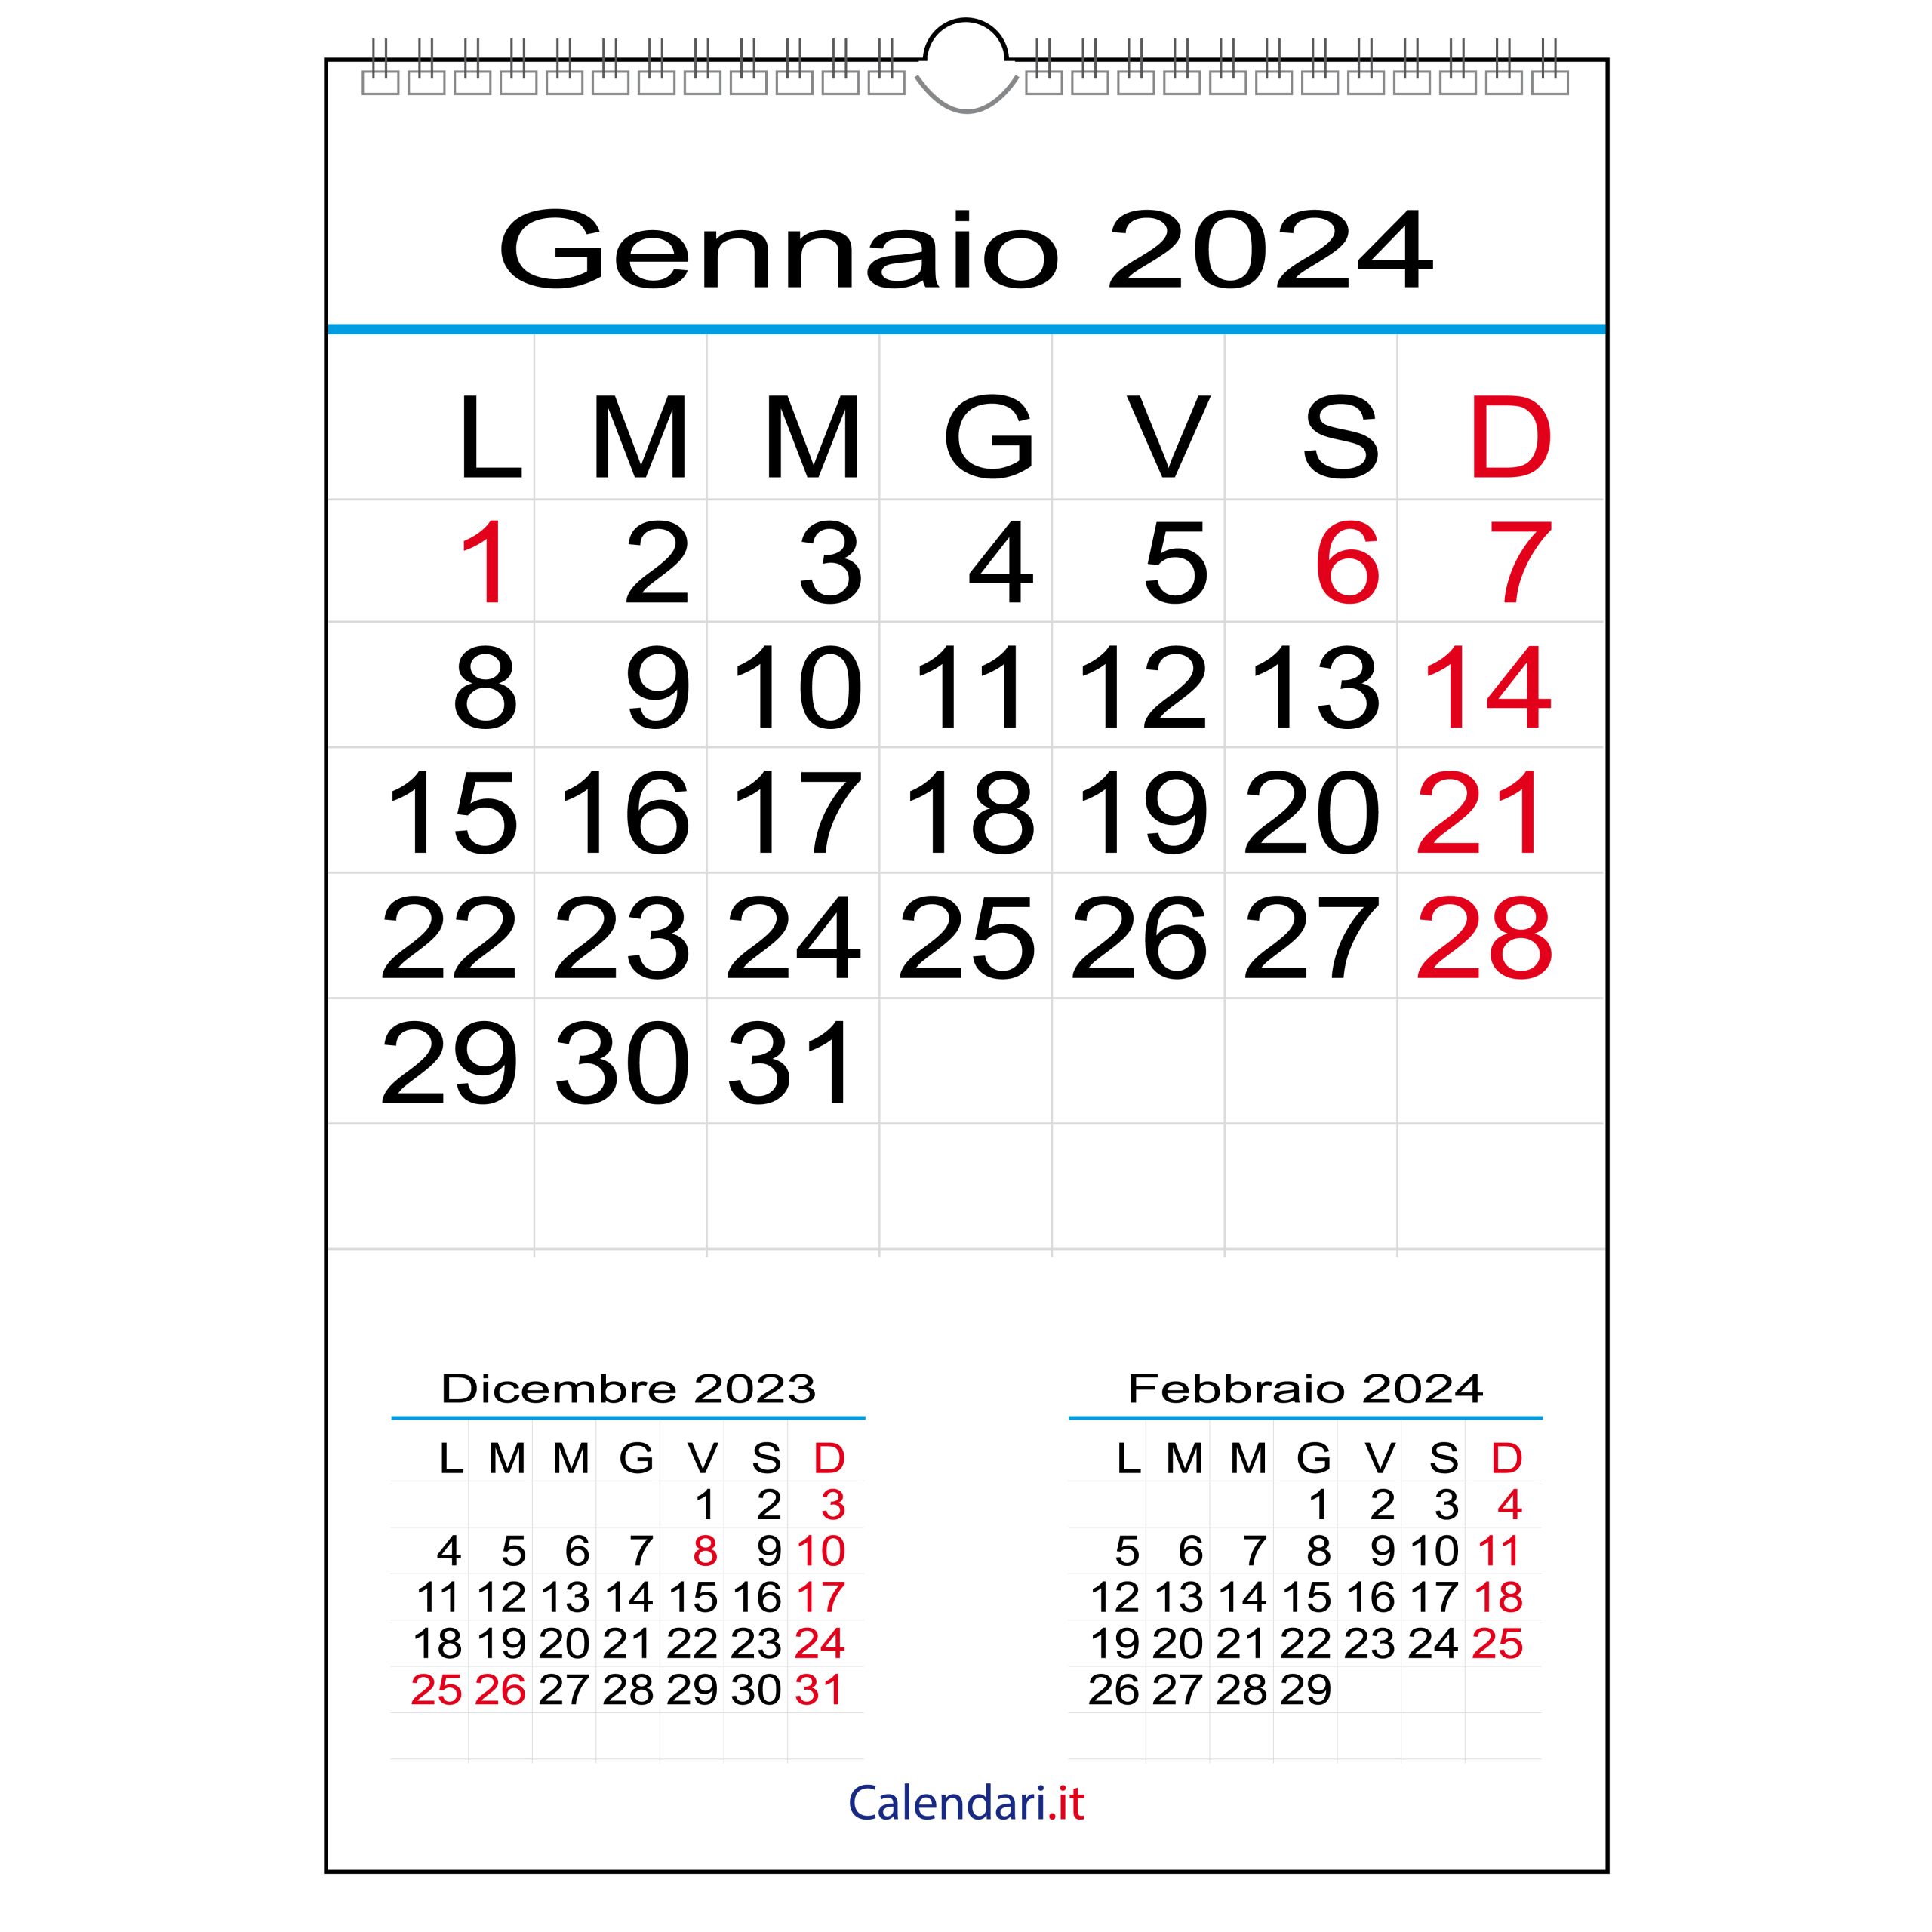 Calendario di gennaio 2024 con festività — idealista/news